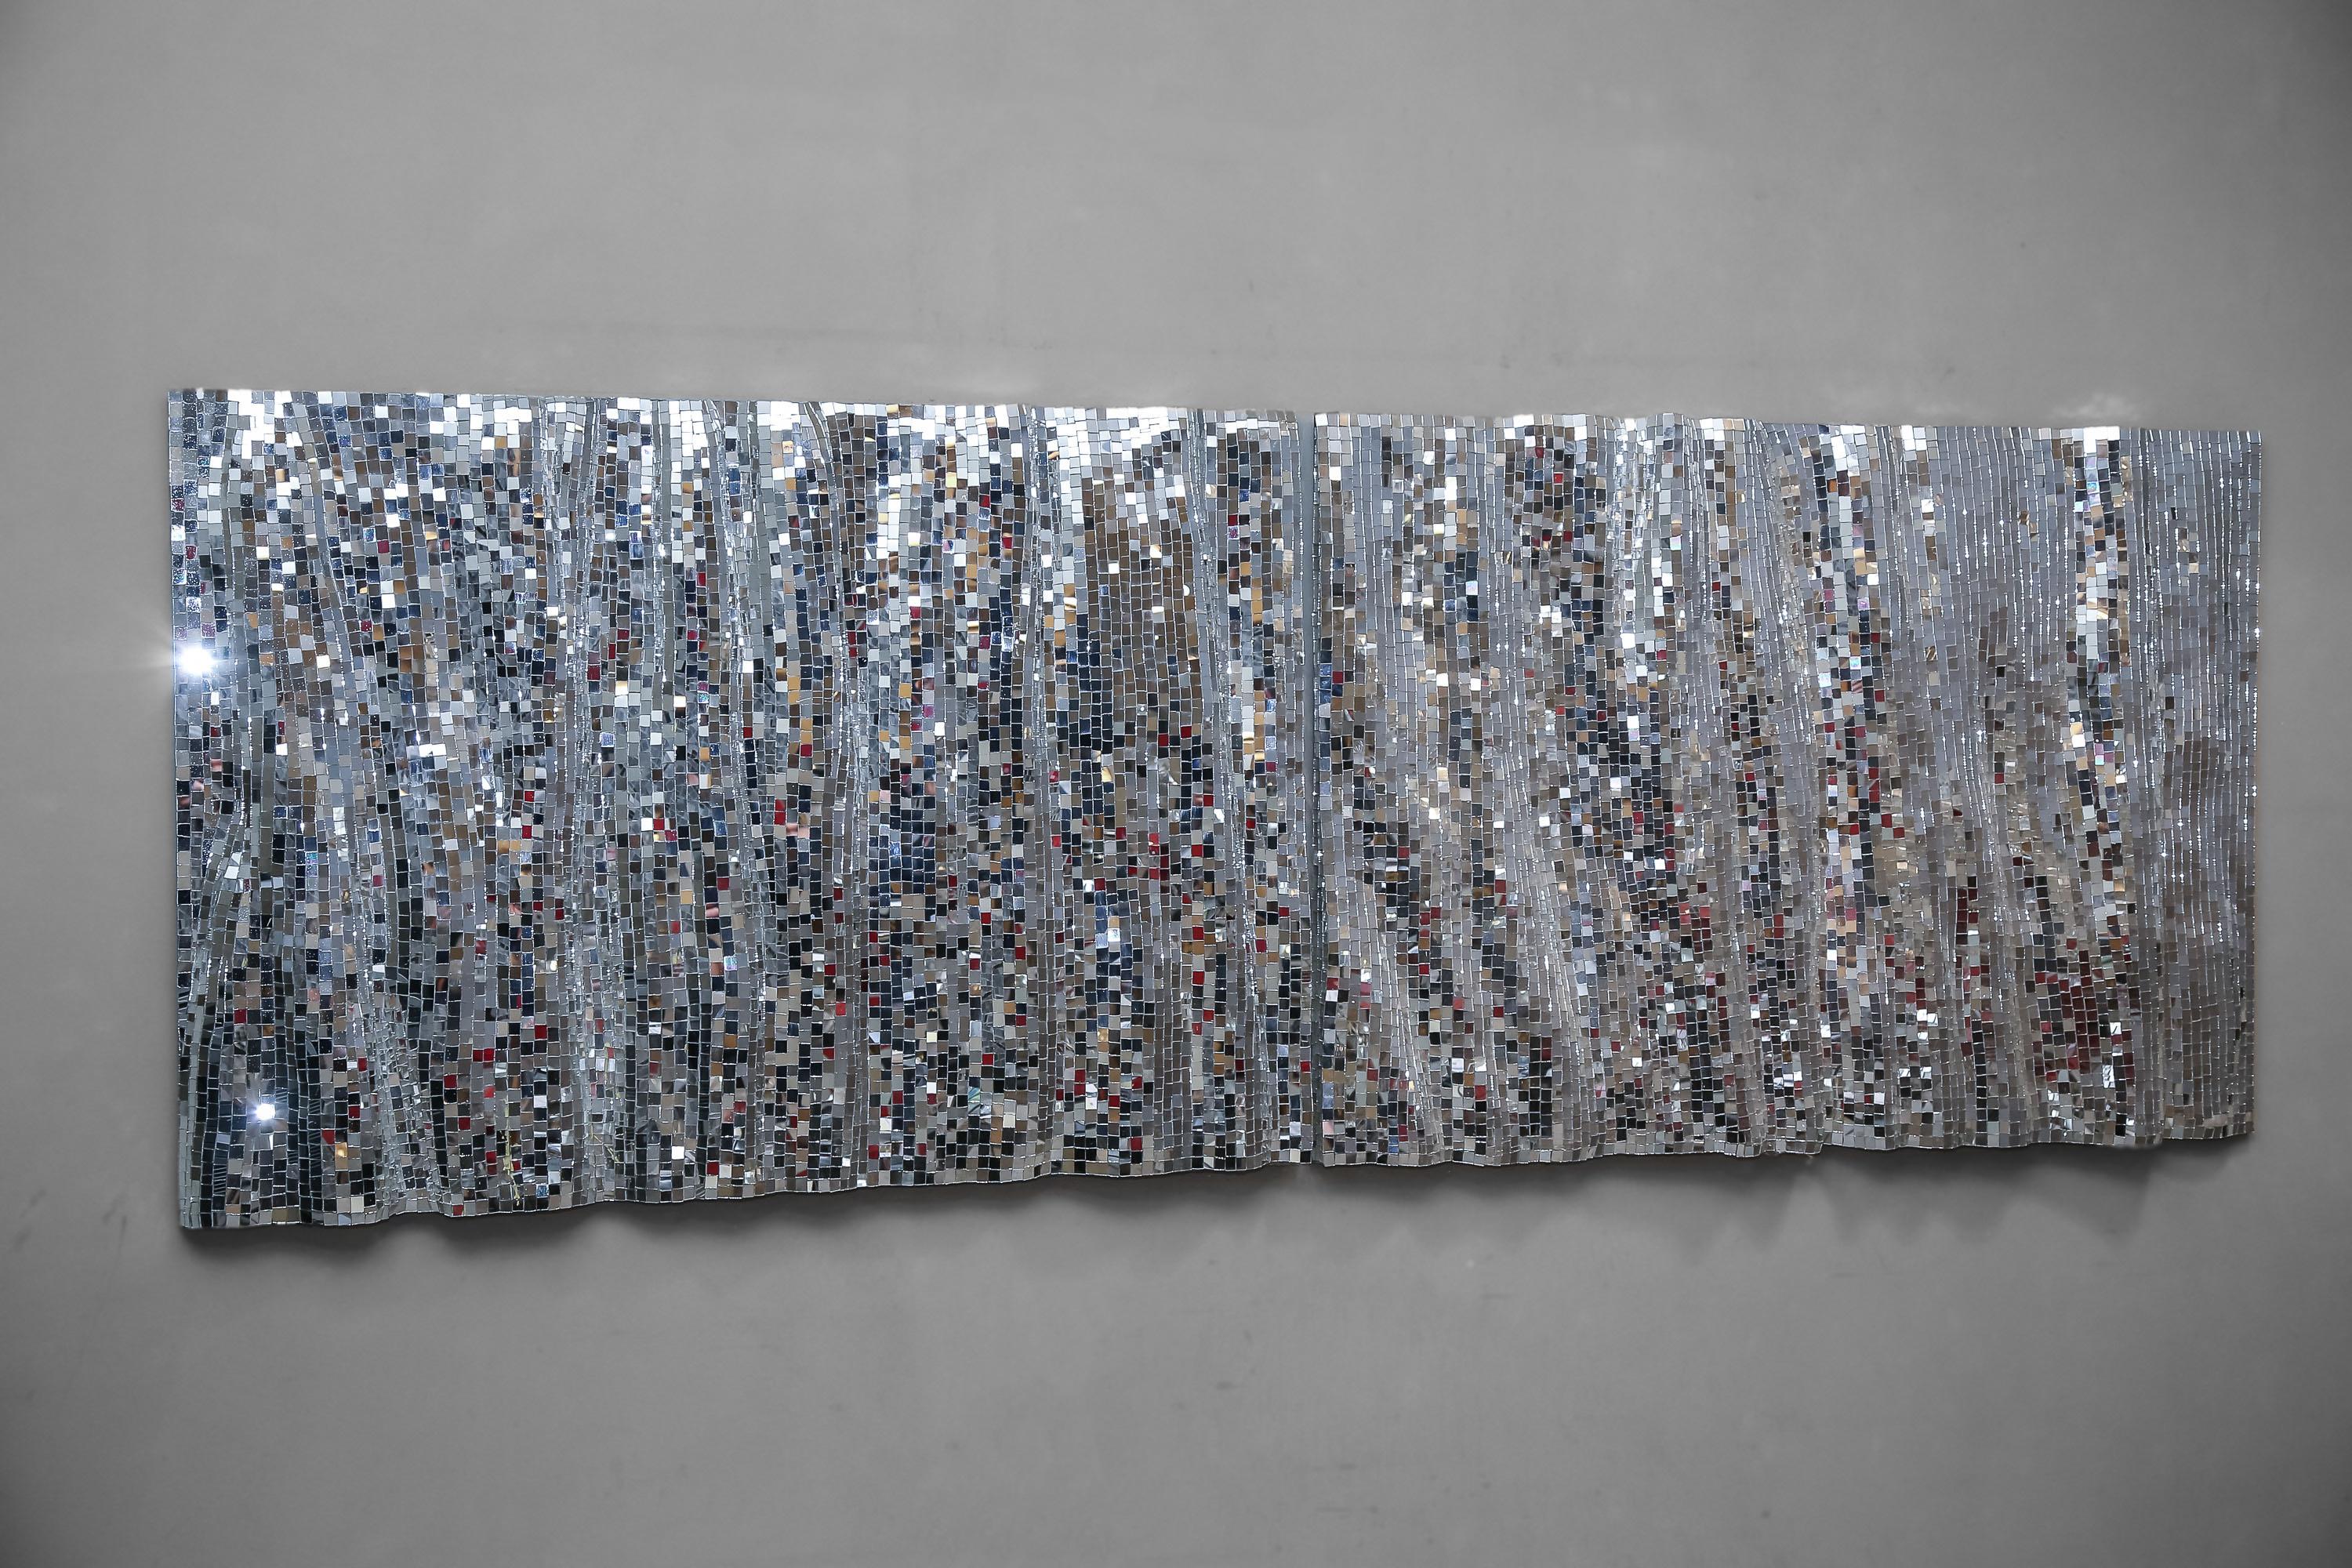 Satz von 2 modularen dekorativen Mosaikspiegeln von Davide Medri
Abmessungen: T 10 x B 85 x H 85 cm (je Tafel).
MATERIALIEN: Spiegelsilber-Mosaik.

Erhältlich in zwei verschiedenen Größen: 85 x 85 cm und 70 x 70 cm. Auch in einer glasroten